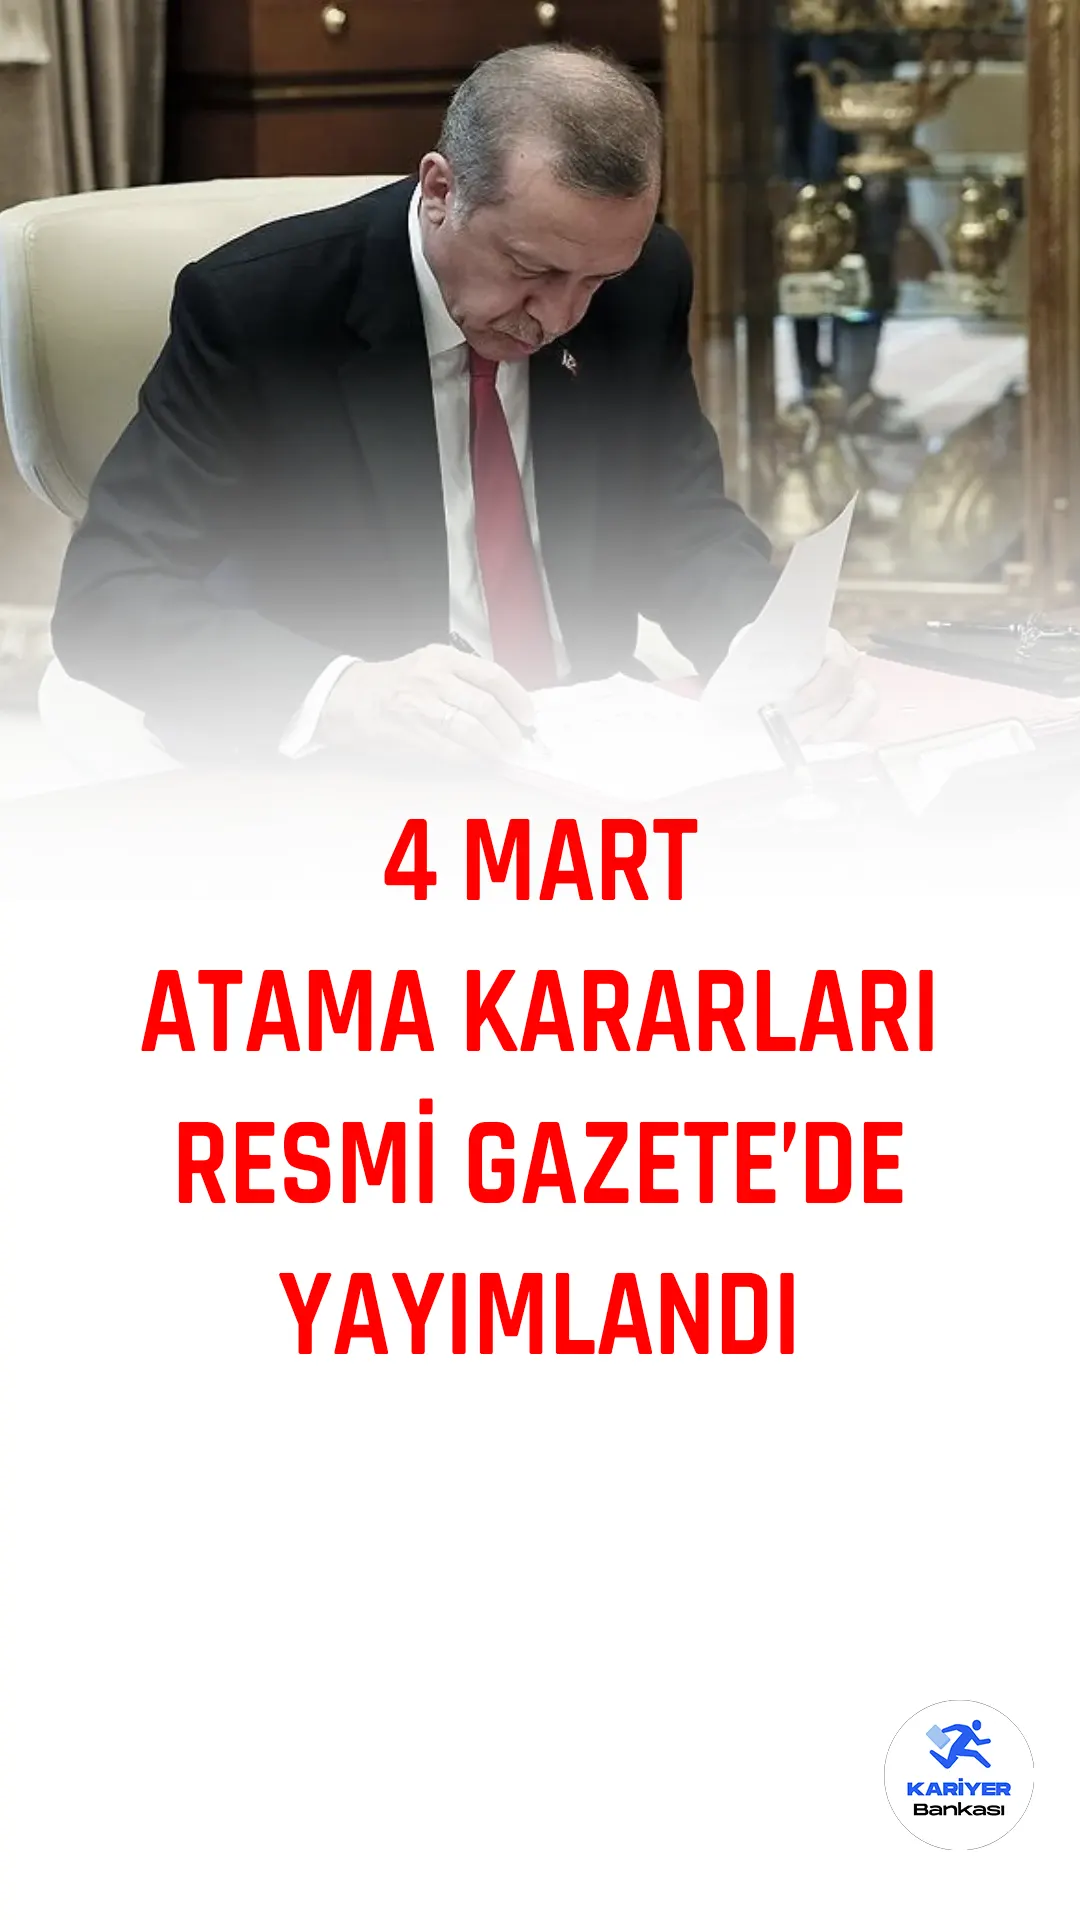 4 Mart atama kararları Resmi Gazete'de yayımlanarak yürülüğe girdi. Cumhurbaşkanı Recep Tayyip Erdoğan'ın imzasını taşıyan atama kararları bu haberimizde.